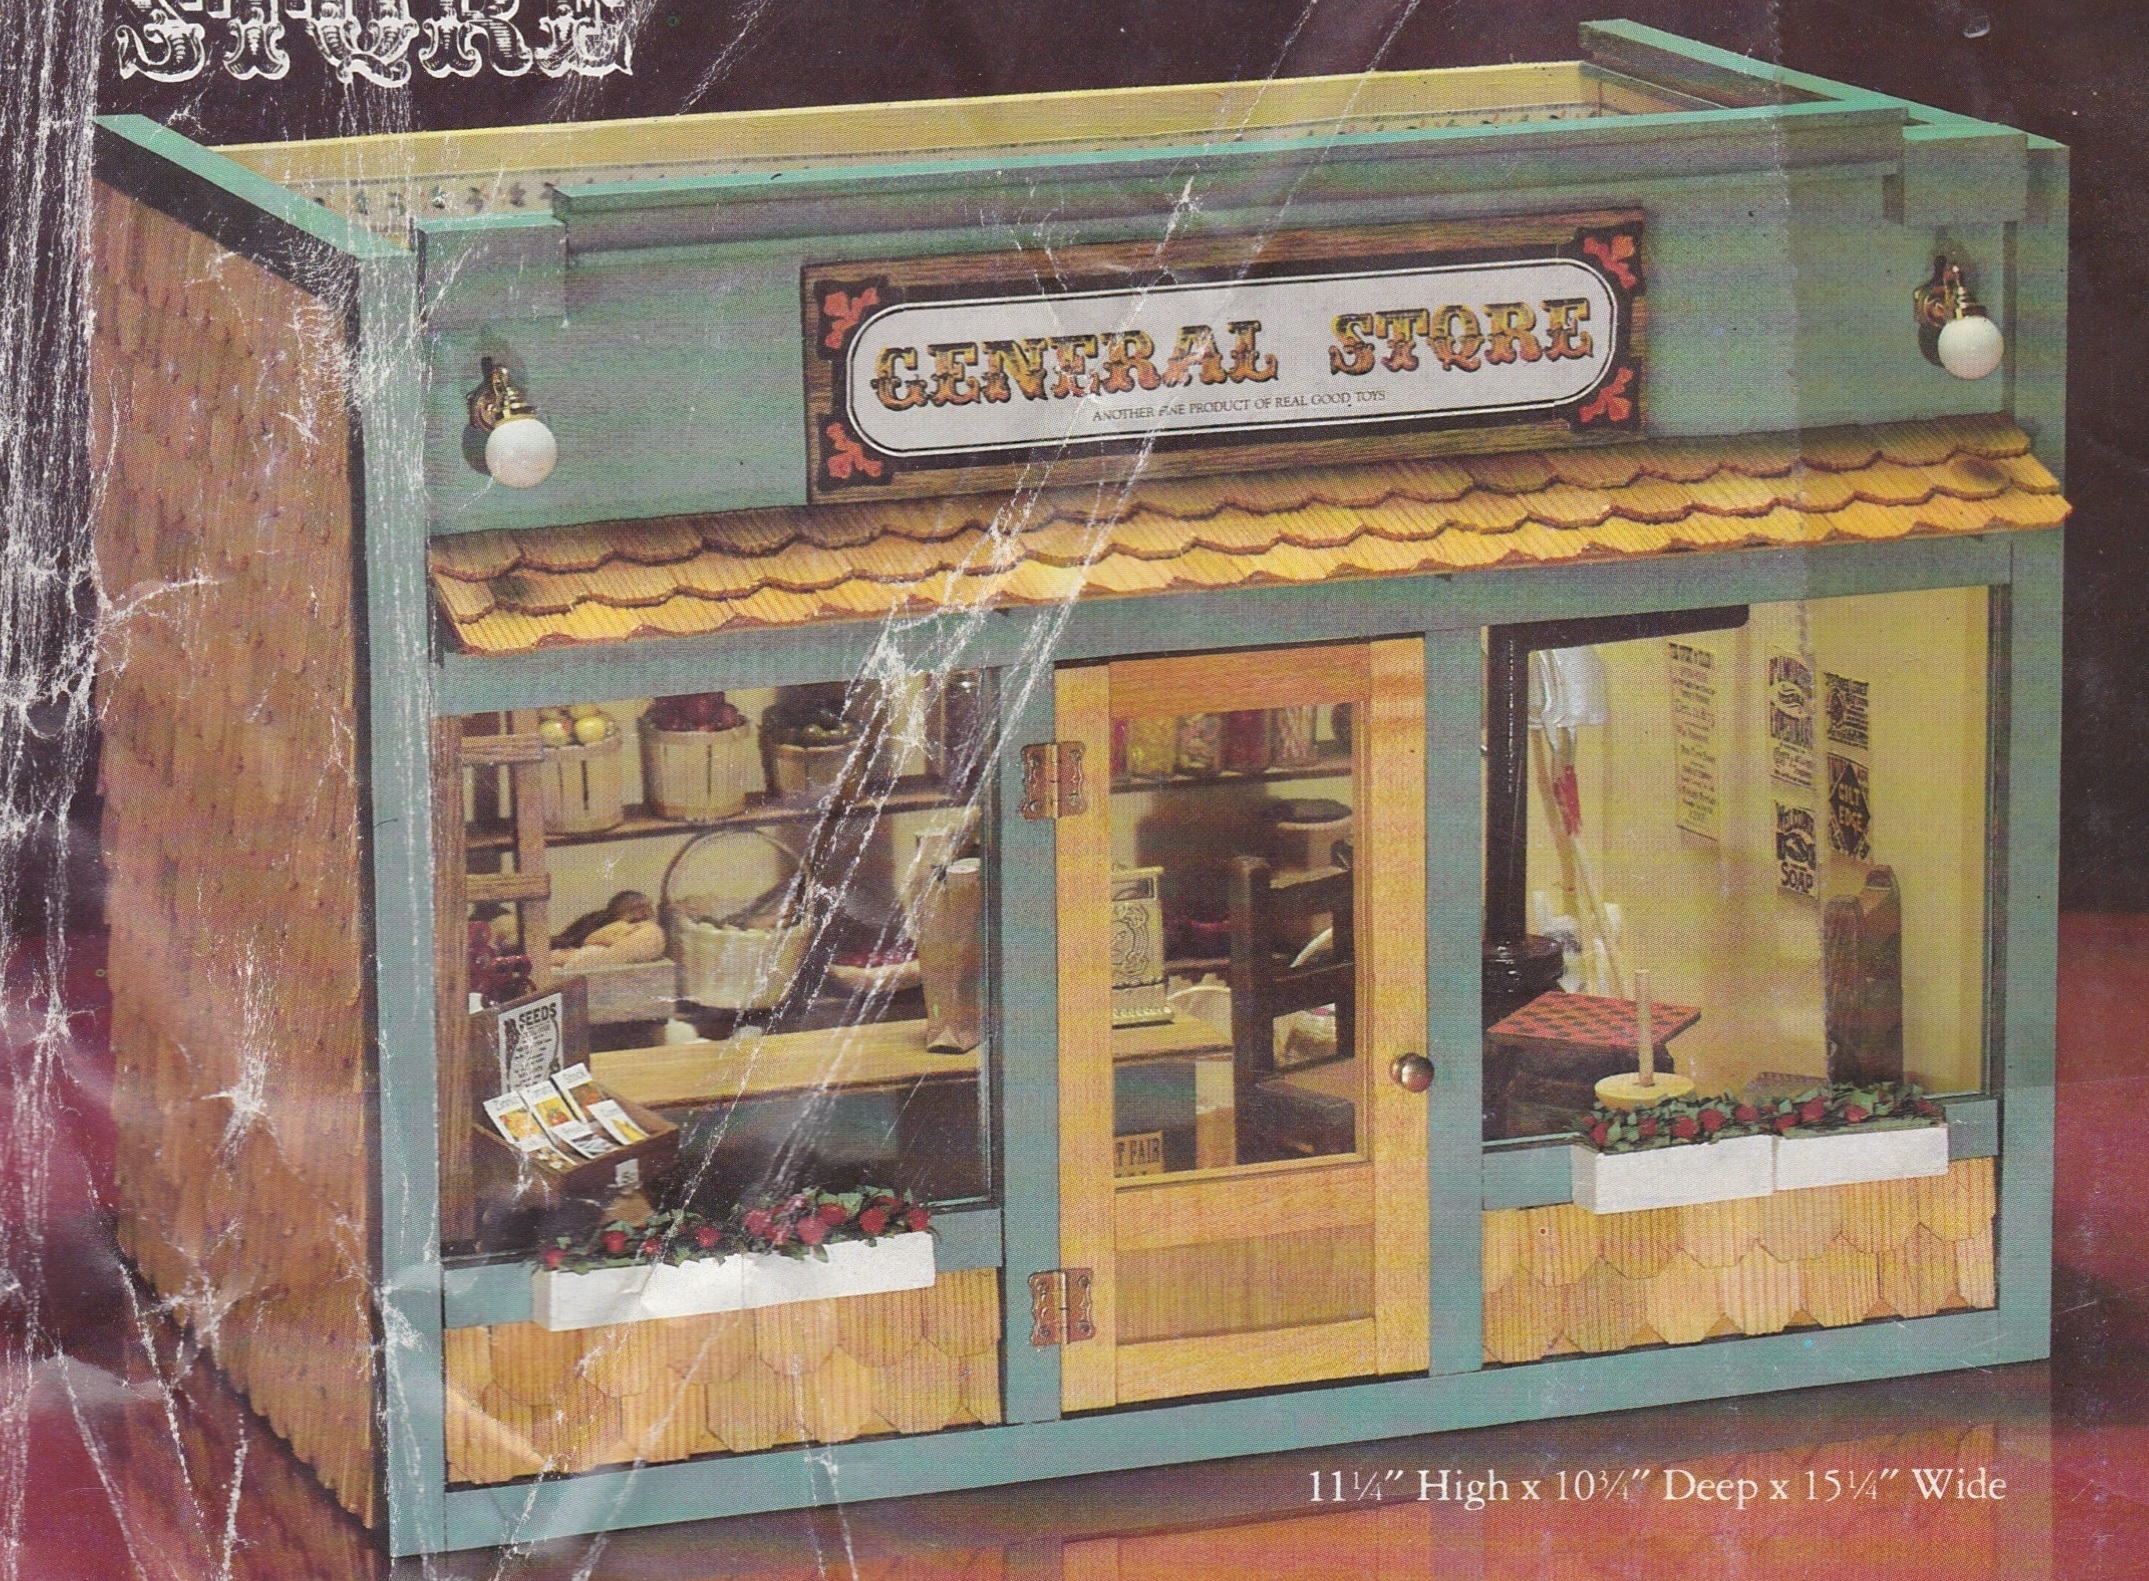 1983 General Store Miniature Kit NIB